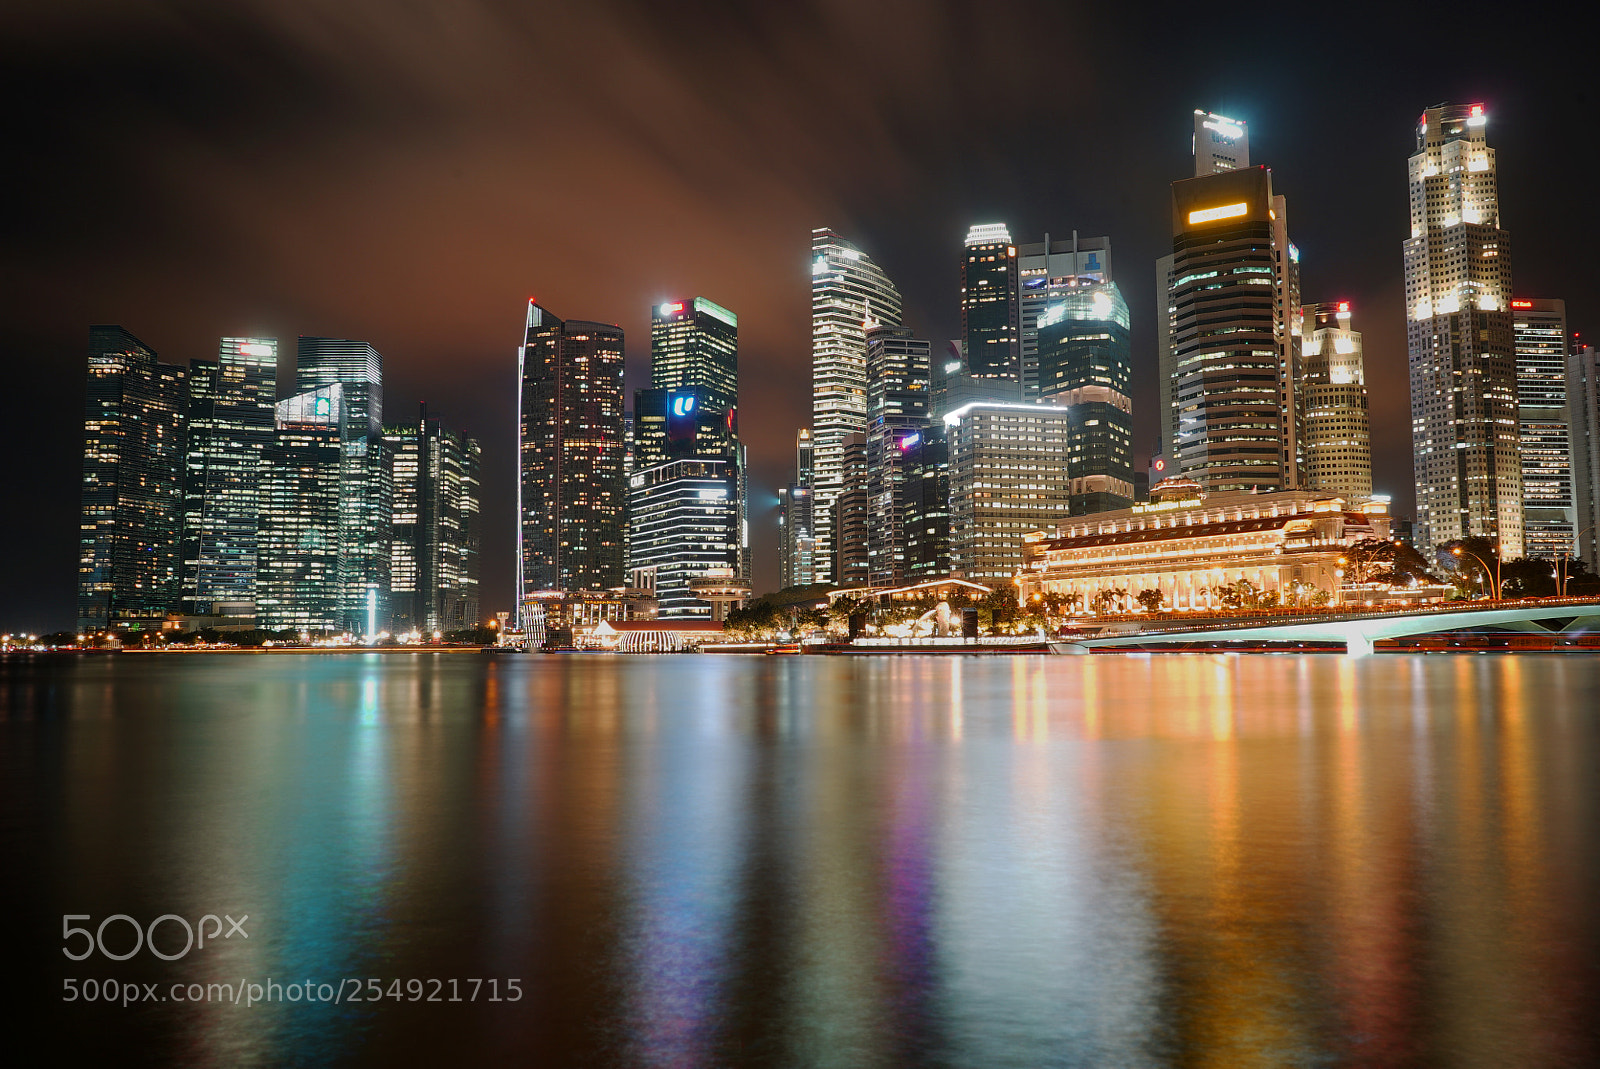 Sony a7S sample photo. Marina bay singapore skyline photography